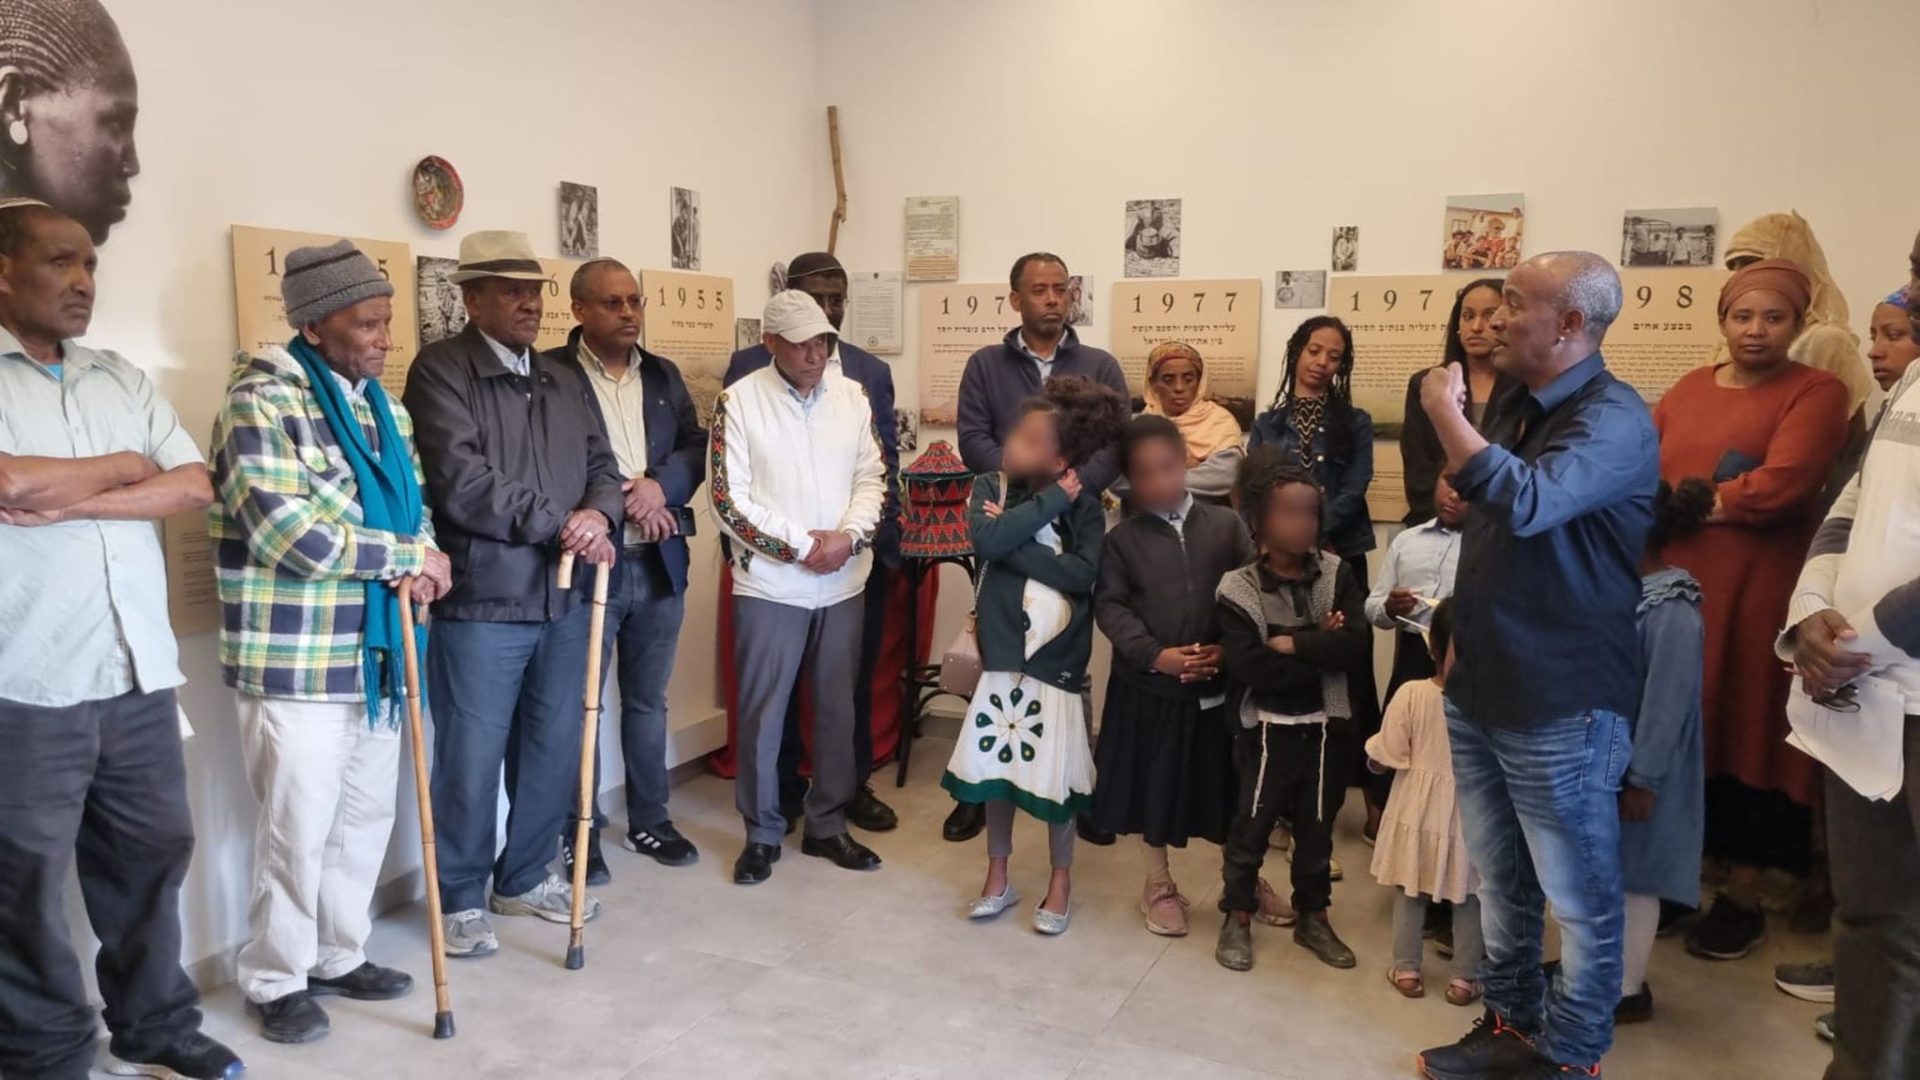 בית ירוסלם מתחדש: חדר הנצחה הוקם לזכר יהודי אתיופיה שנספו בדרכם לישראל